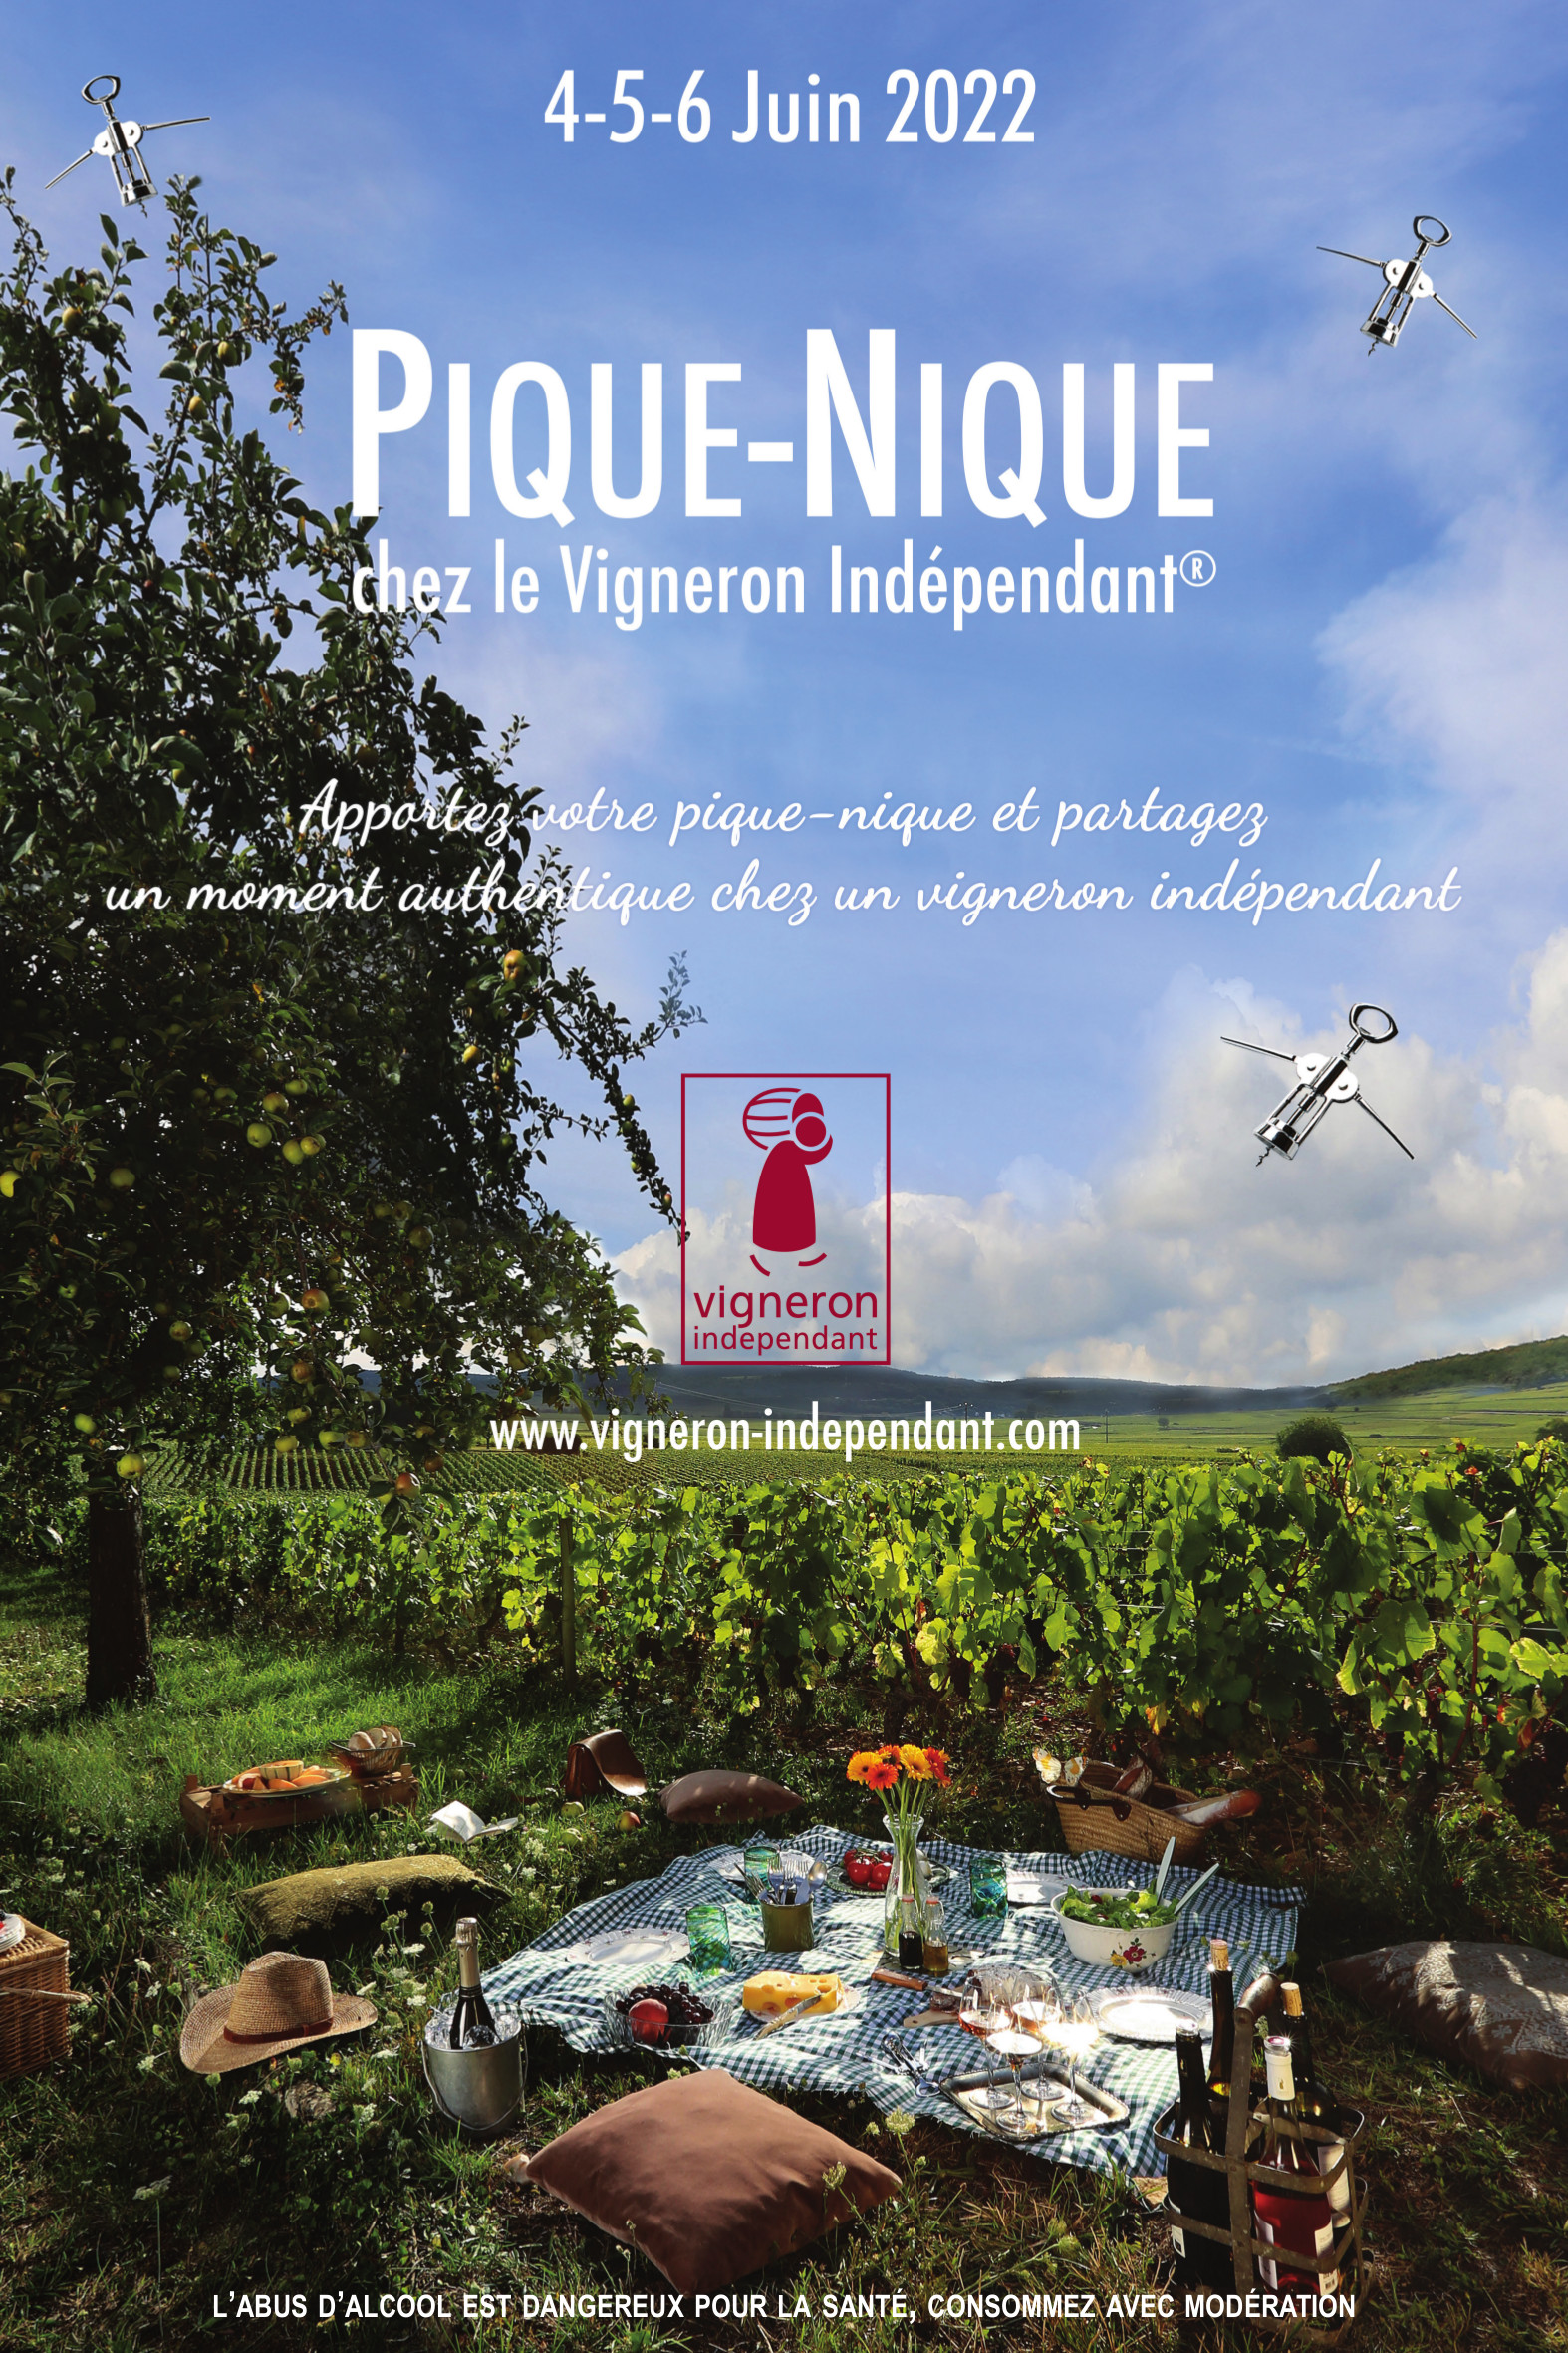 Figeac : Pique-nique chez le vigneron indépendant 2022: Château de Calassou